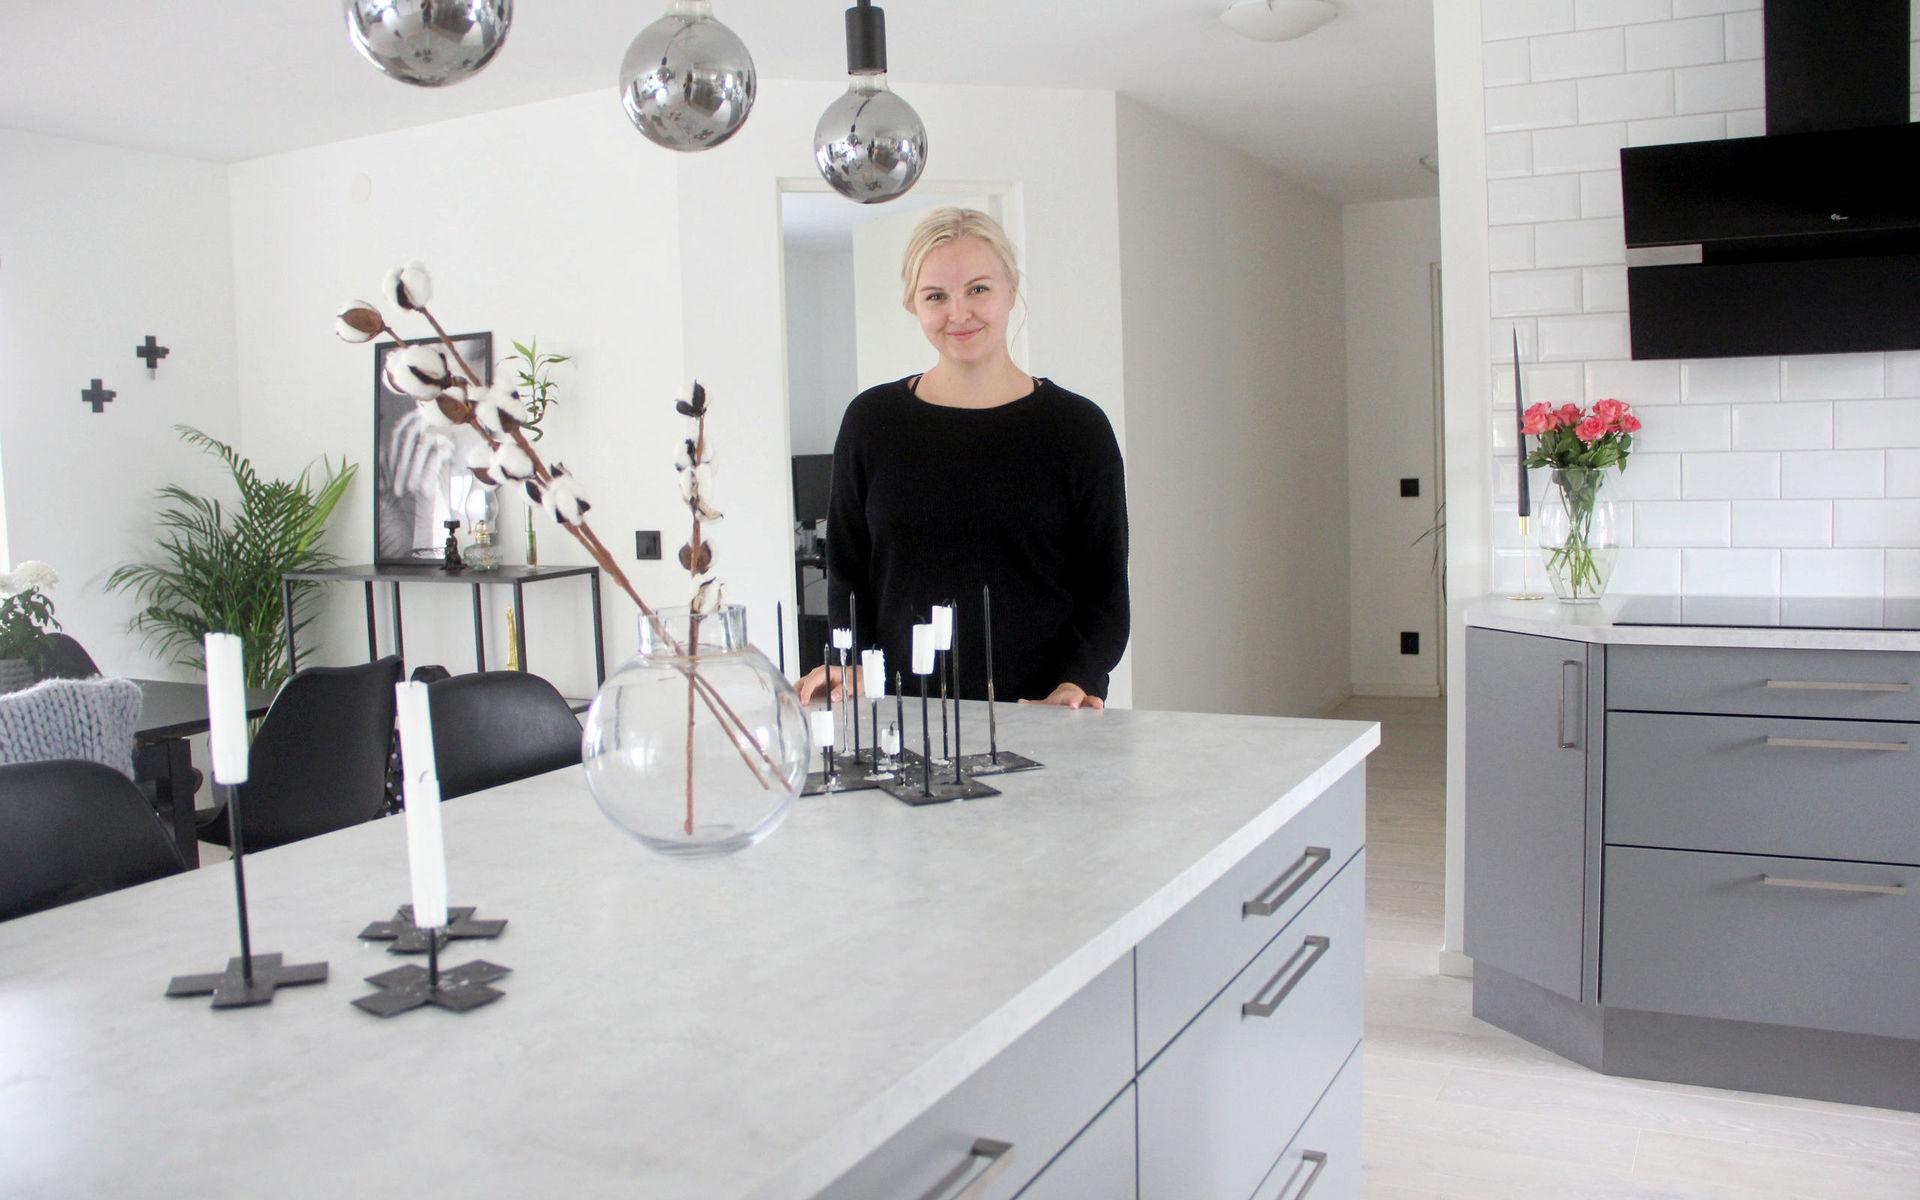 Emelie Karlsson och hennes sambo köpte huset i Träslöv för ett år sedan. Sedan dess har det genomgått en totalförvandling.